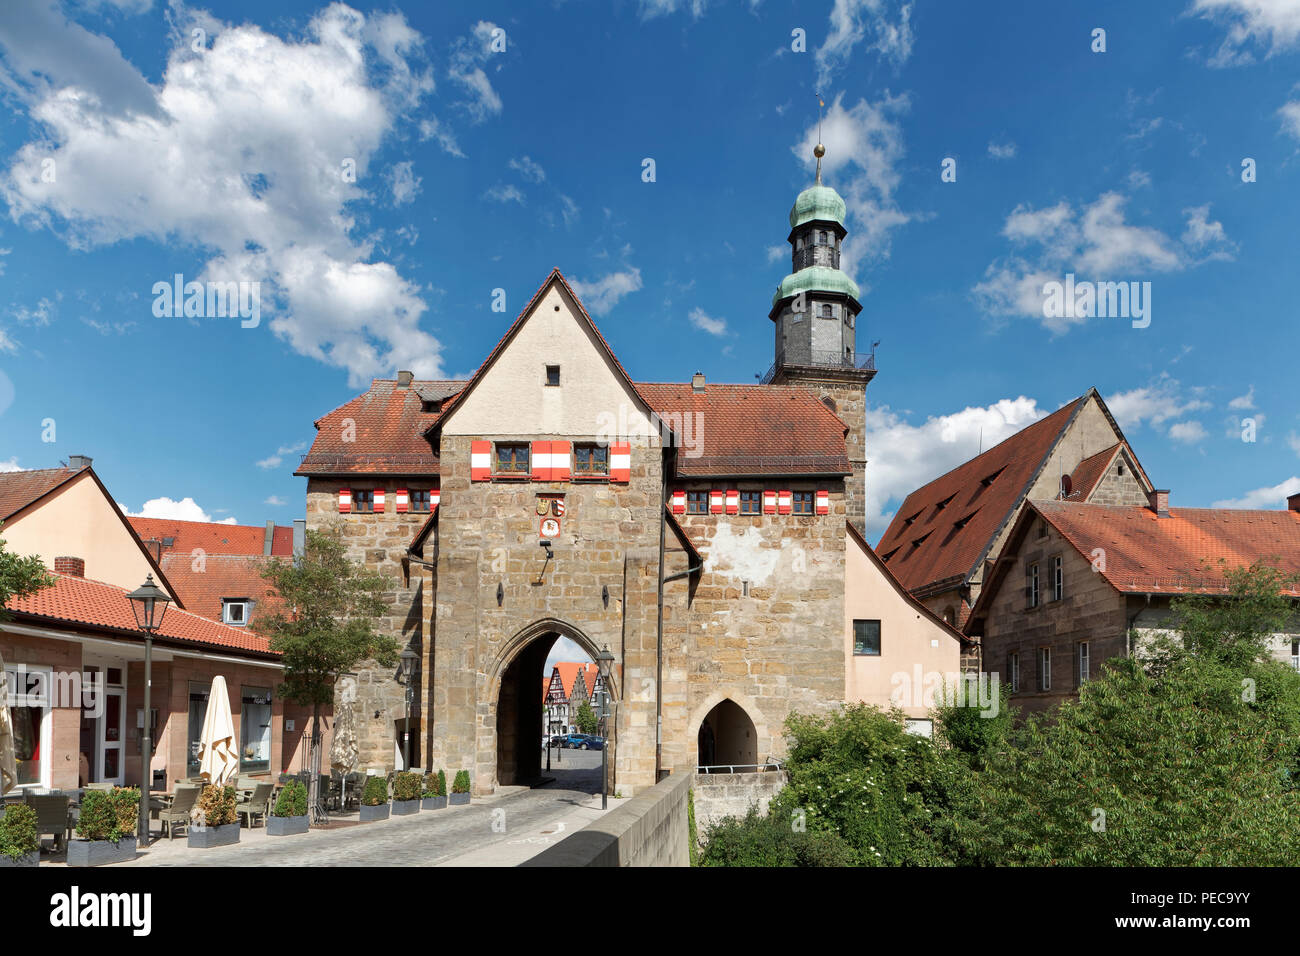 La porte de Nuremberg, derrière St. John's Church, gunzenhausen, Middle Franconia, Franconia, Bavaria, Germany Banque D'Images